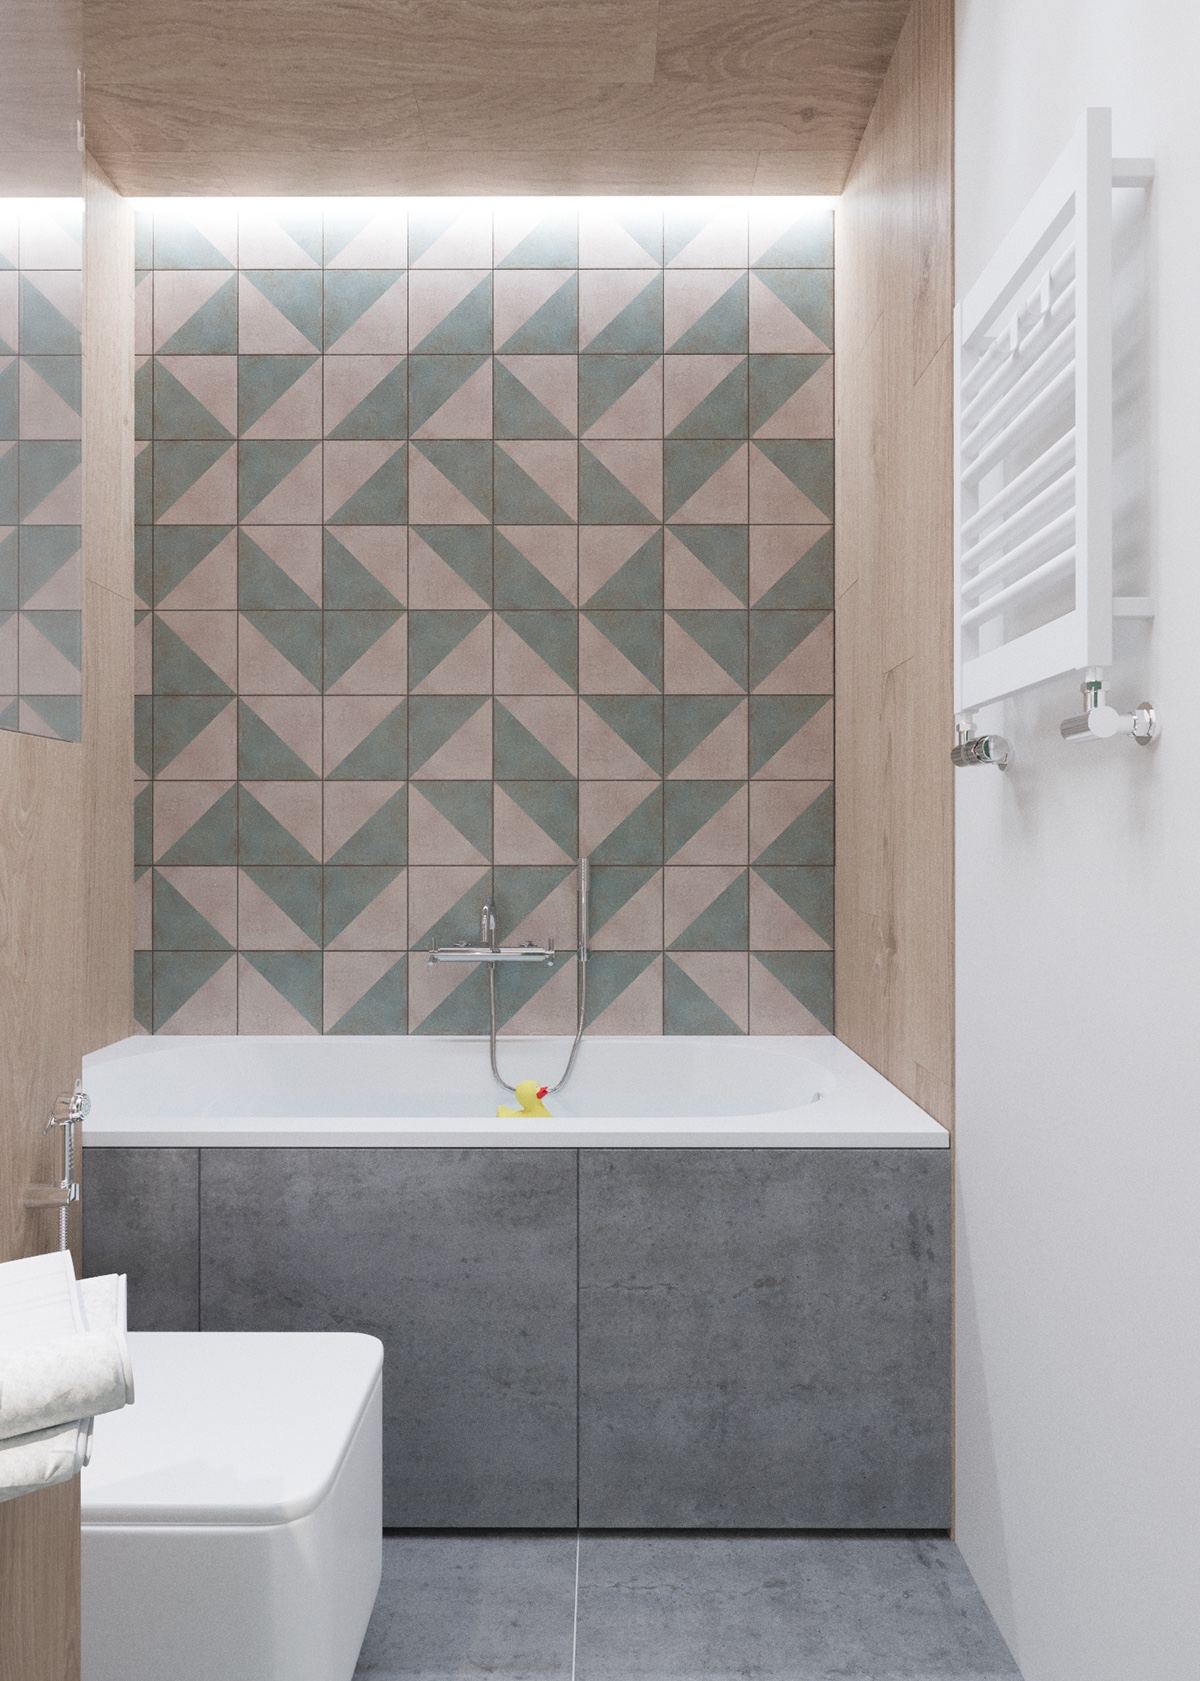 Claves_para_crear_contrastes_de_color_en_la_decoración_espacio_baño_cute-sage-green-and-wood-bathroom-tile-mosaic-min